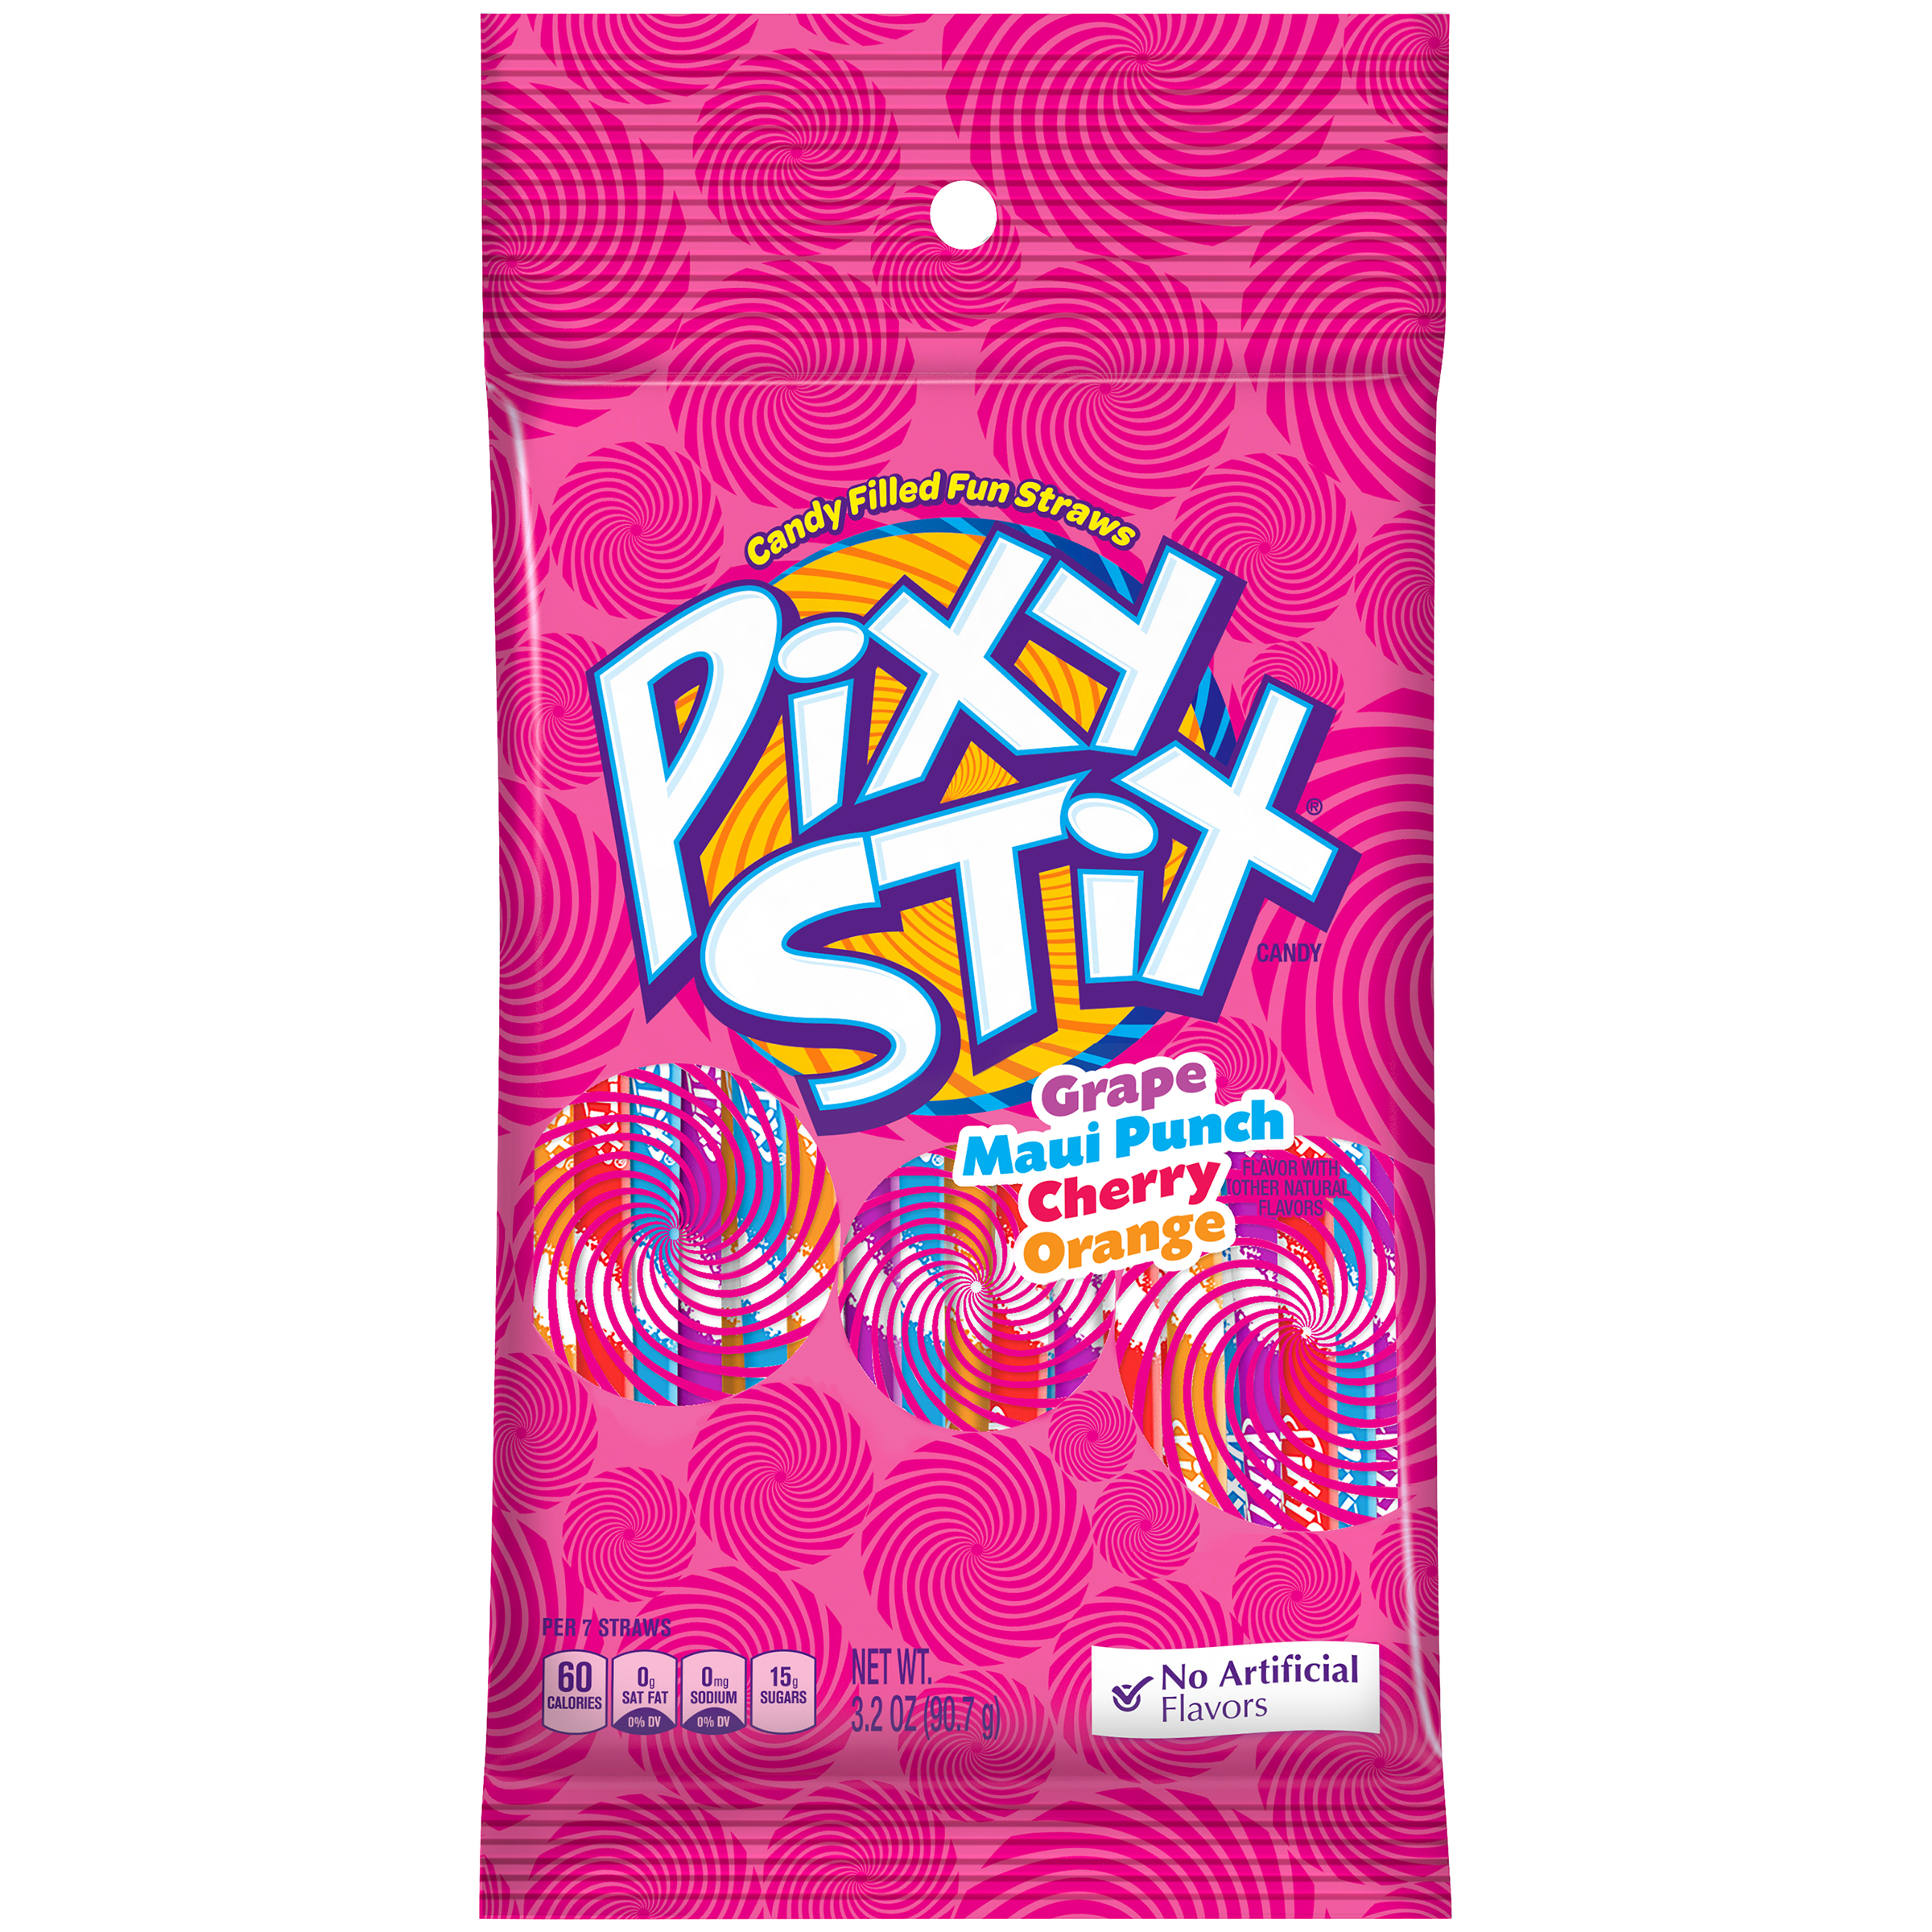 Pixie Stix Sugar Candy Stix 3.2 Ounce Pack